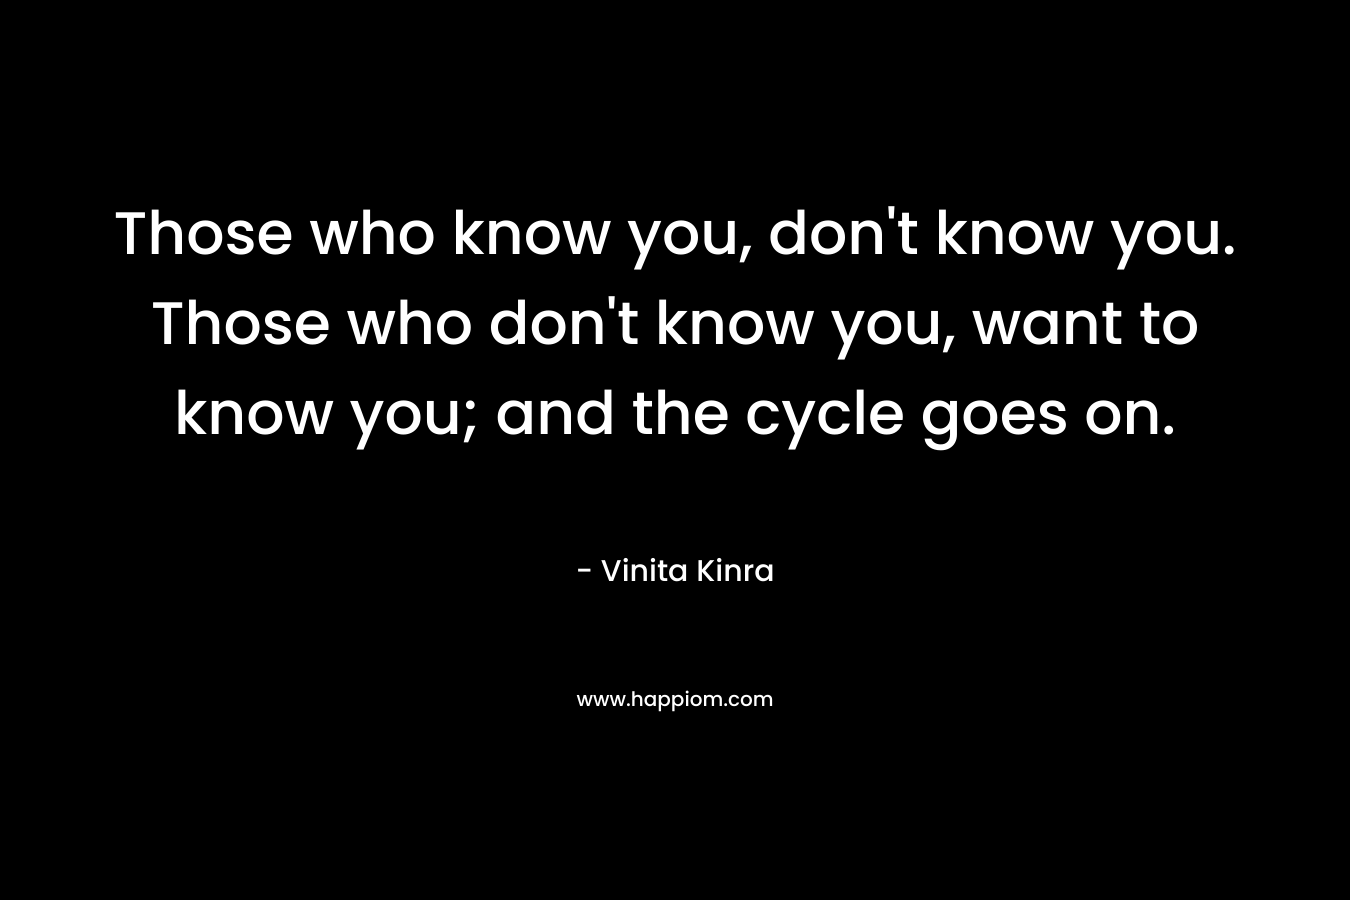 Those who know you, don’t know you. Those who don’t know you, want to know you; and the cycle goes on. – Vinita Kinra